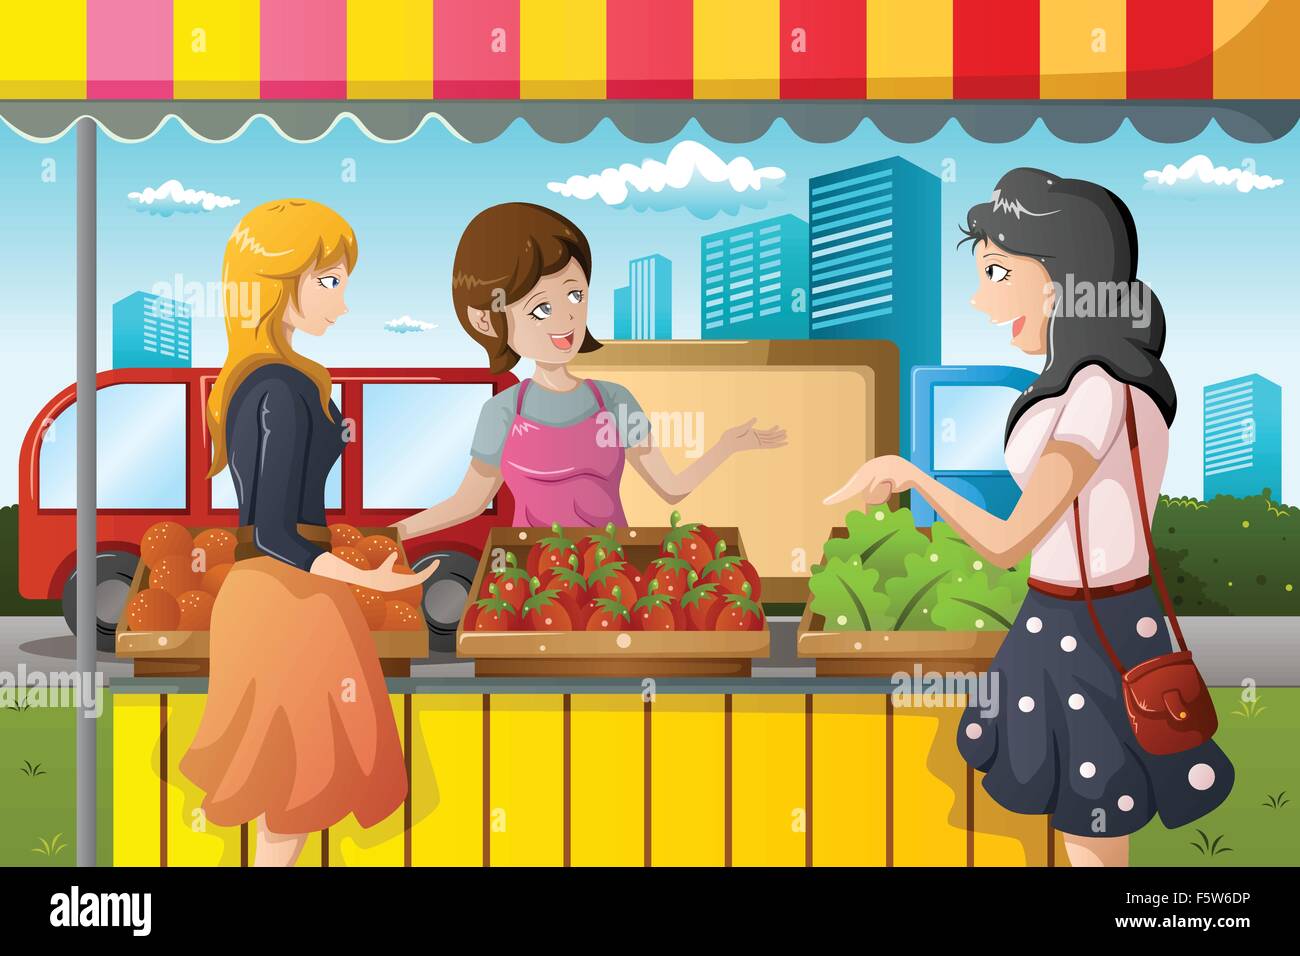 Un vecteur illustration de personnes shopping dans un marché d'agriculteurs de plein air Illustration de Vecteur